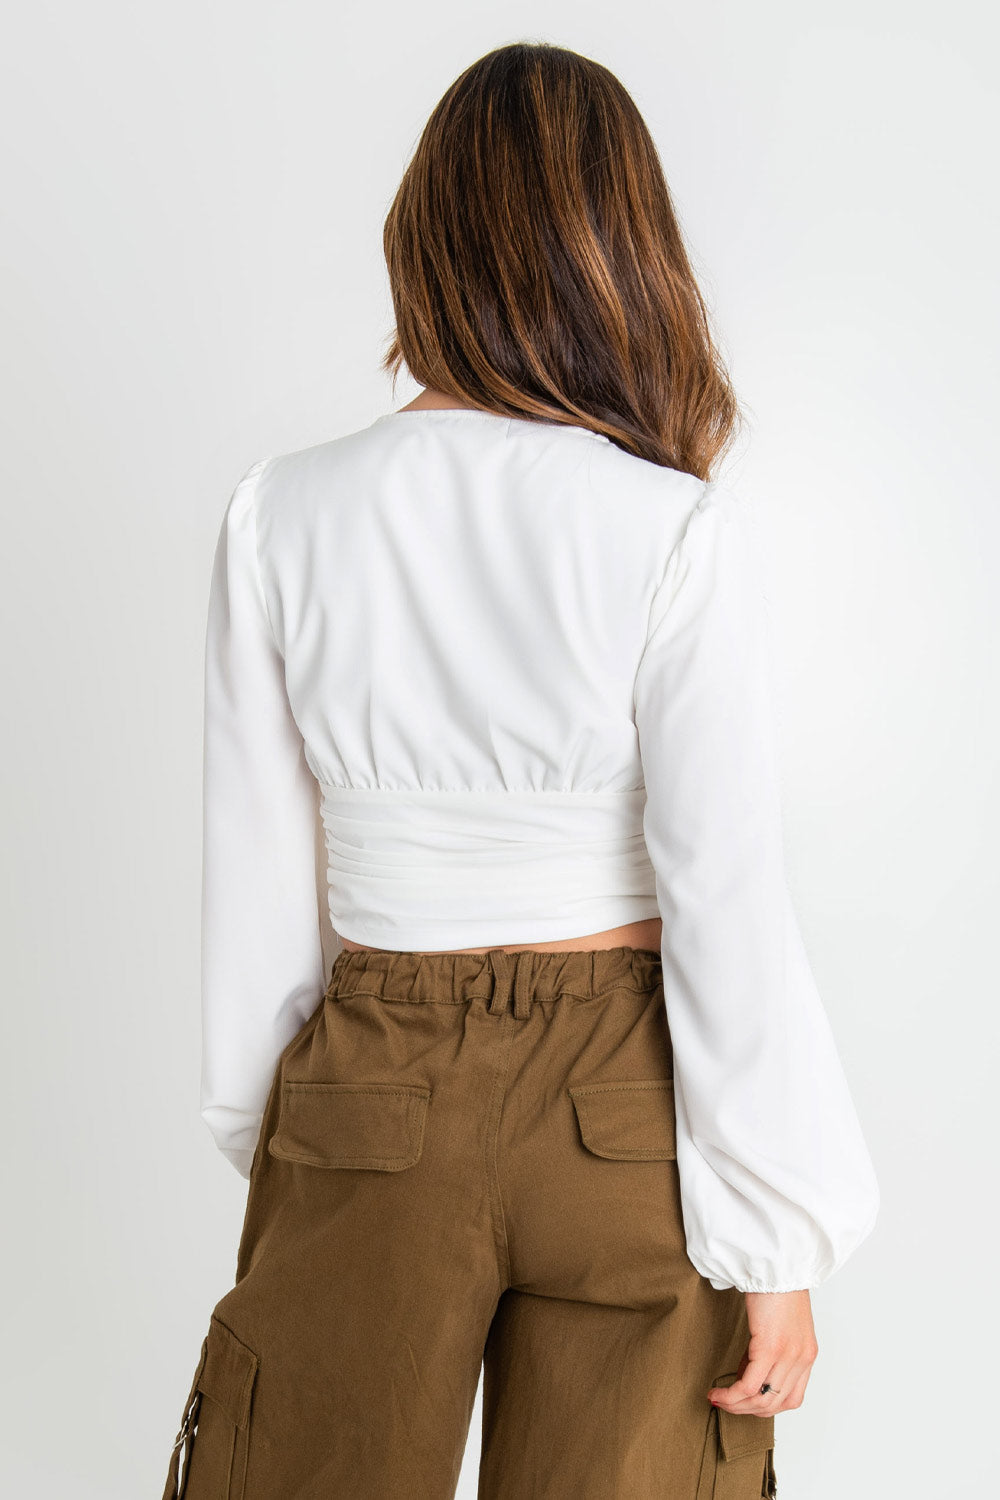 Blusa corta de manga larga abullonada, escote v con detalles plisados, cortes frontales y plisados en costados.